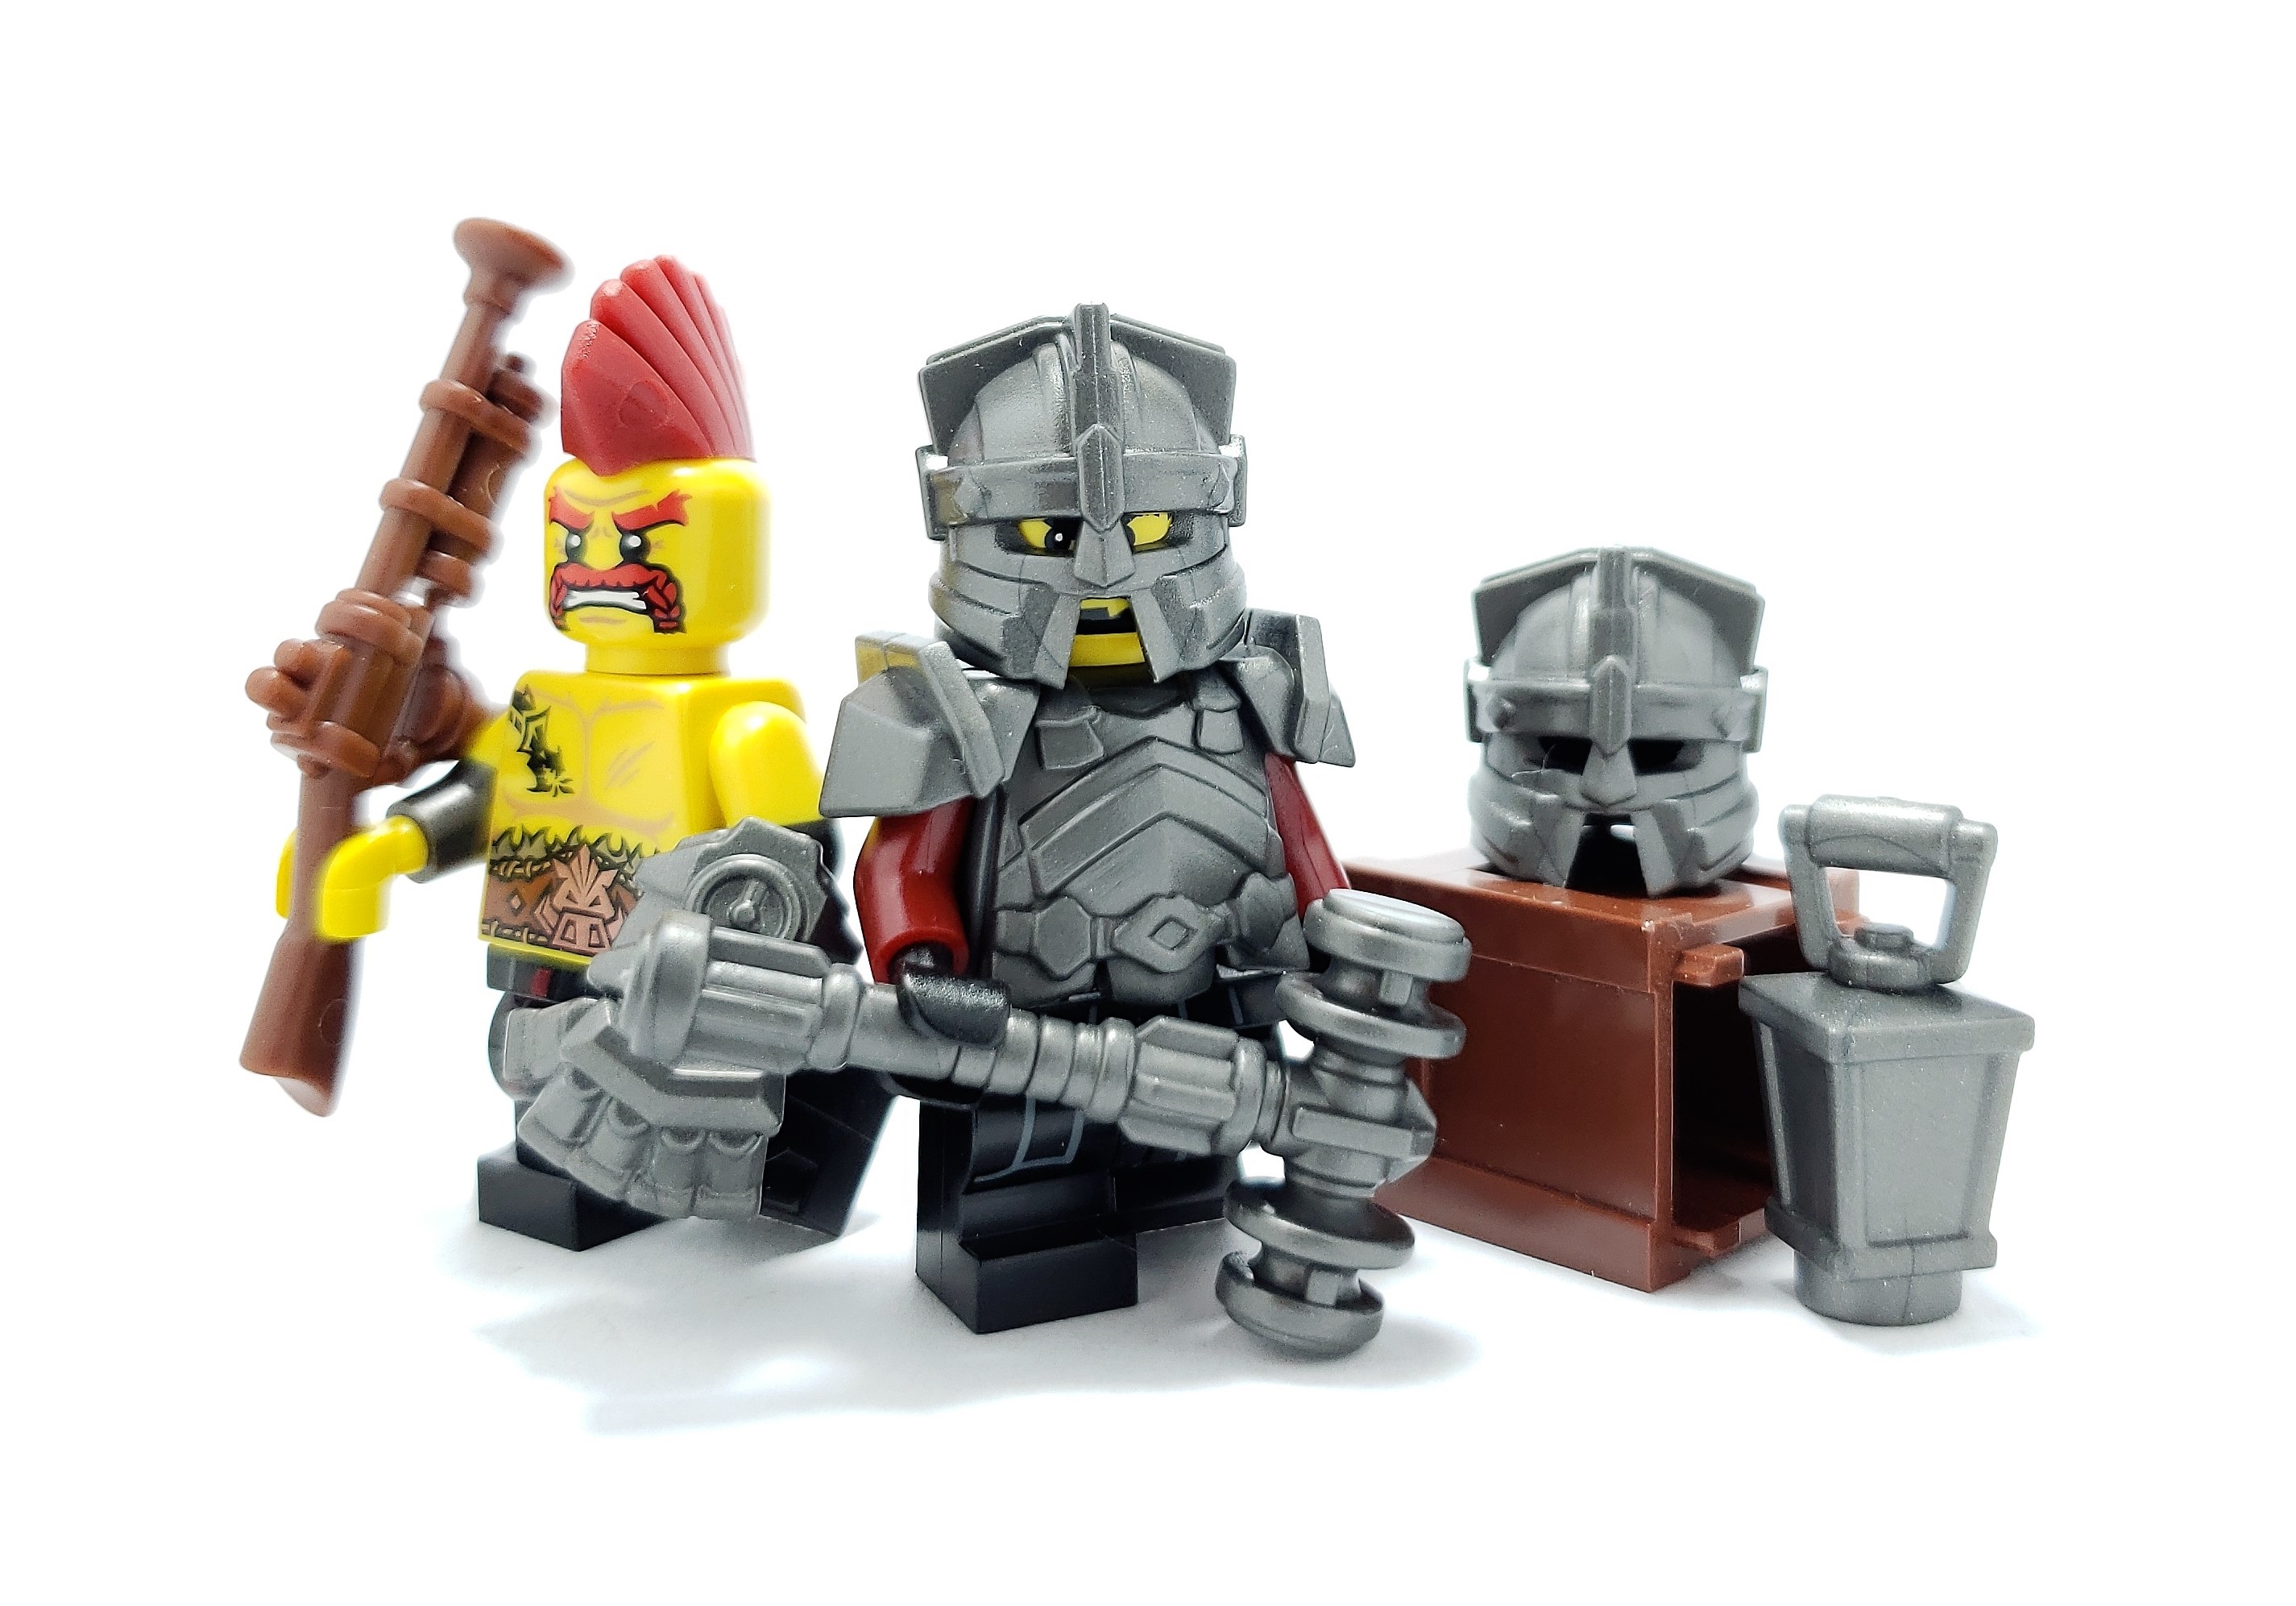 lego dwarf armor, helmet, and hammer